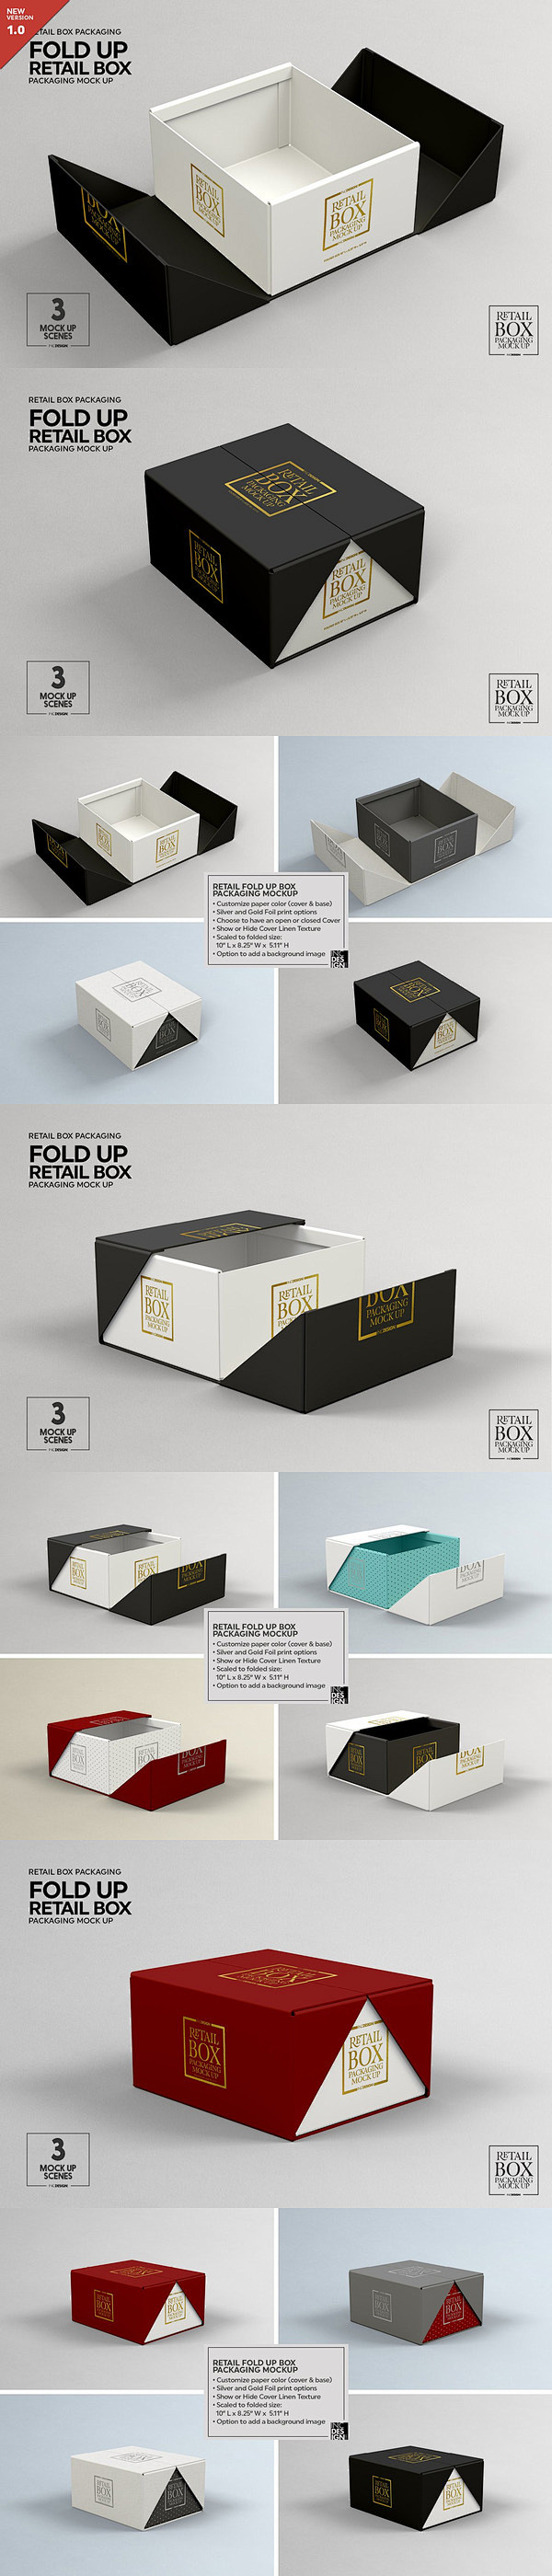 有创意的双层包装盒设计展示样机下载[PS...